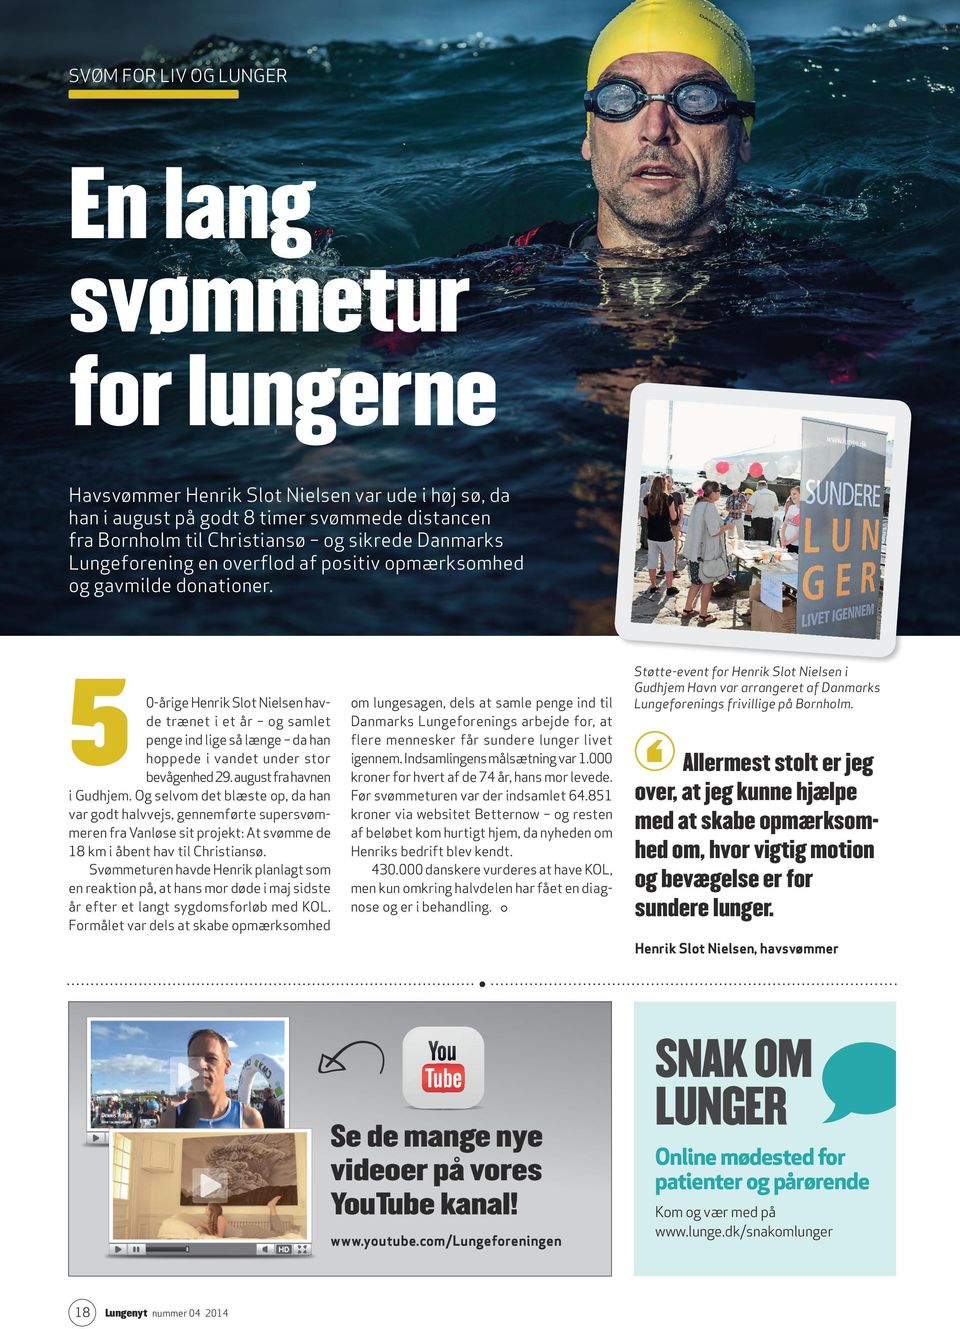 5 0-årige Henrik Slot Nielsen havde trænet i et år og samlet penge ind lige så længe da han hoppede i vandet under stor bevågenhed 29. august fra havnen i Gudhjem.